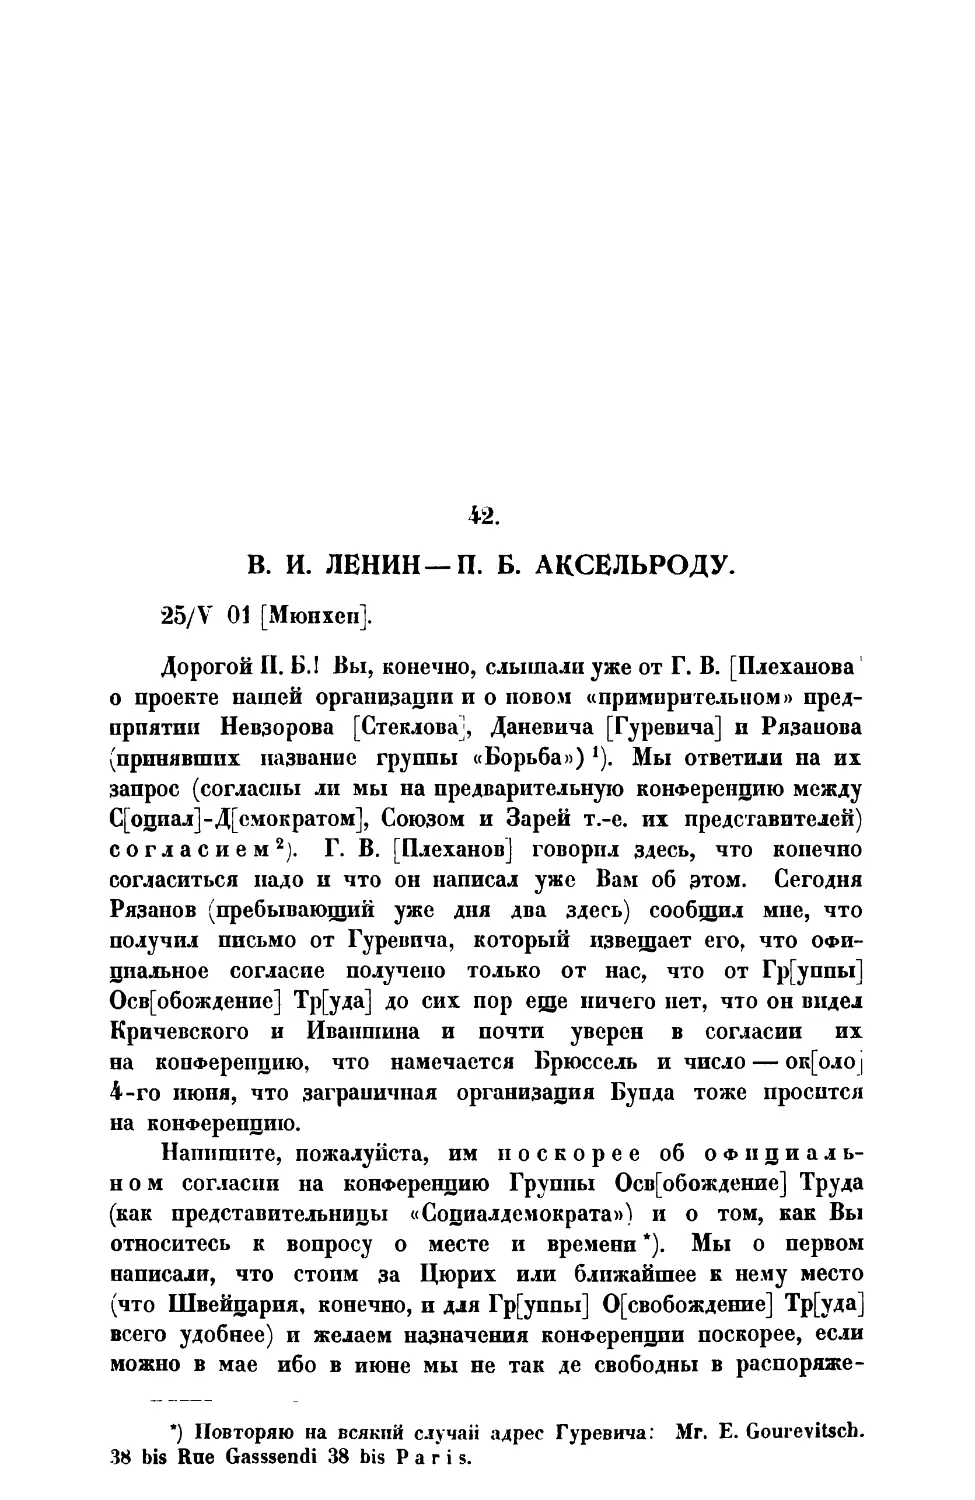 42. В. И. Ленин. — Письмо П. Б. Аксельроду от 25 V 1901 г.